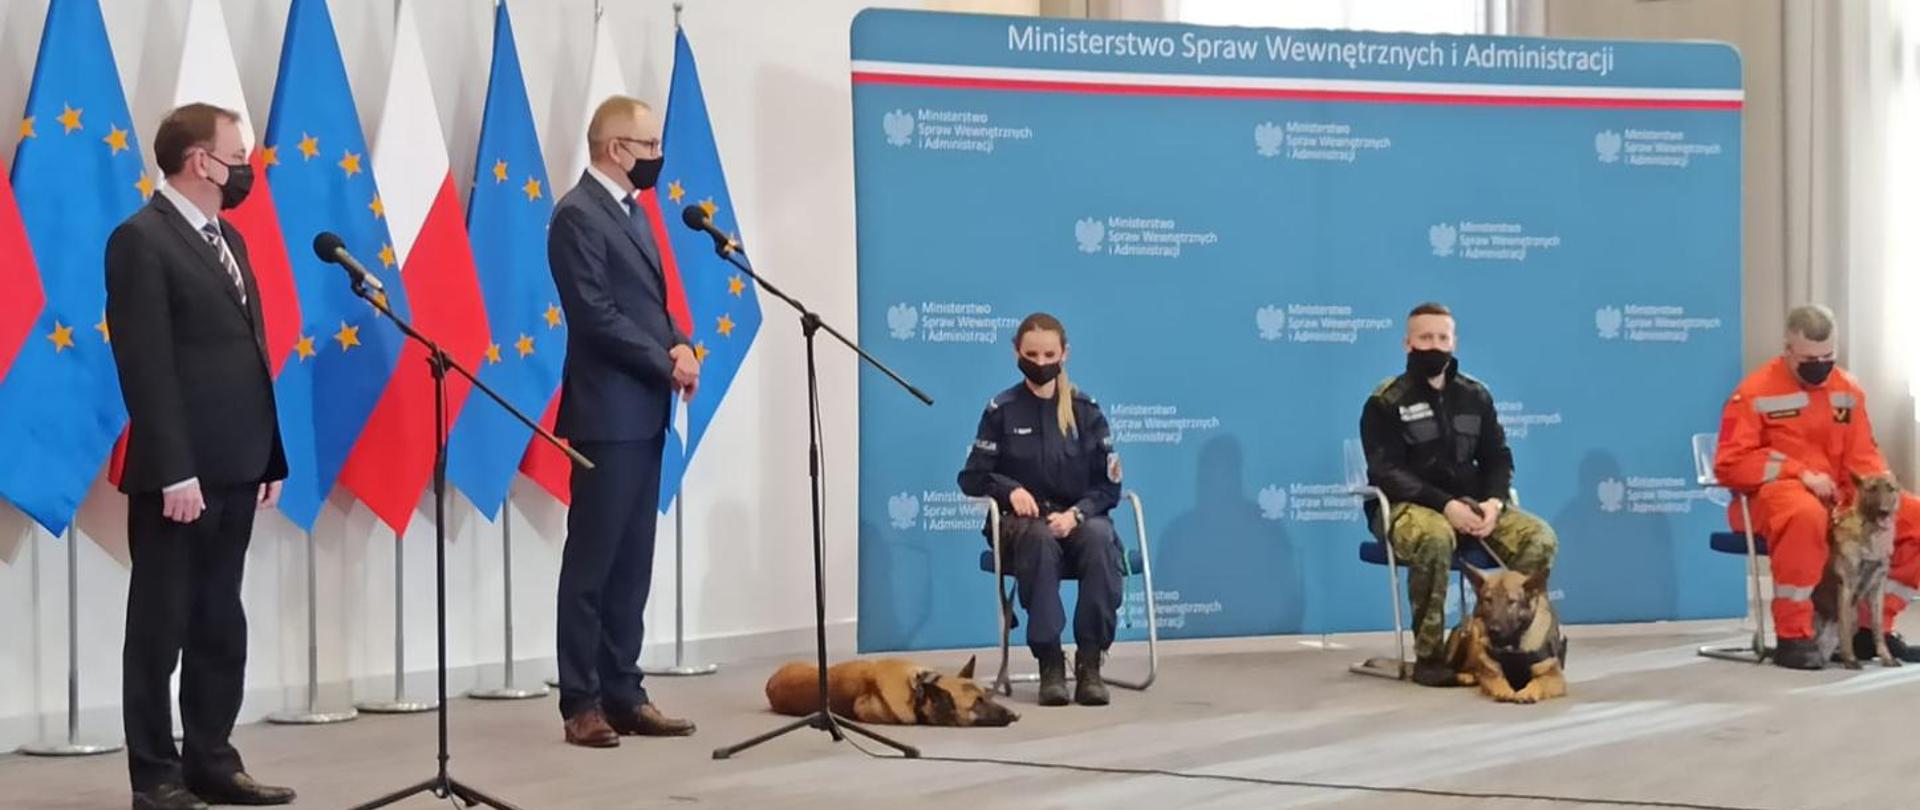 Na zdjęciu Minister Spraw Wewnętrznych i Administracji oraz funkcjonariusze służb mundurowych i ich psy podczas konferencji